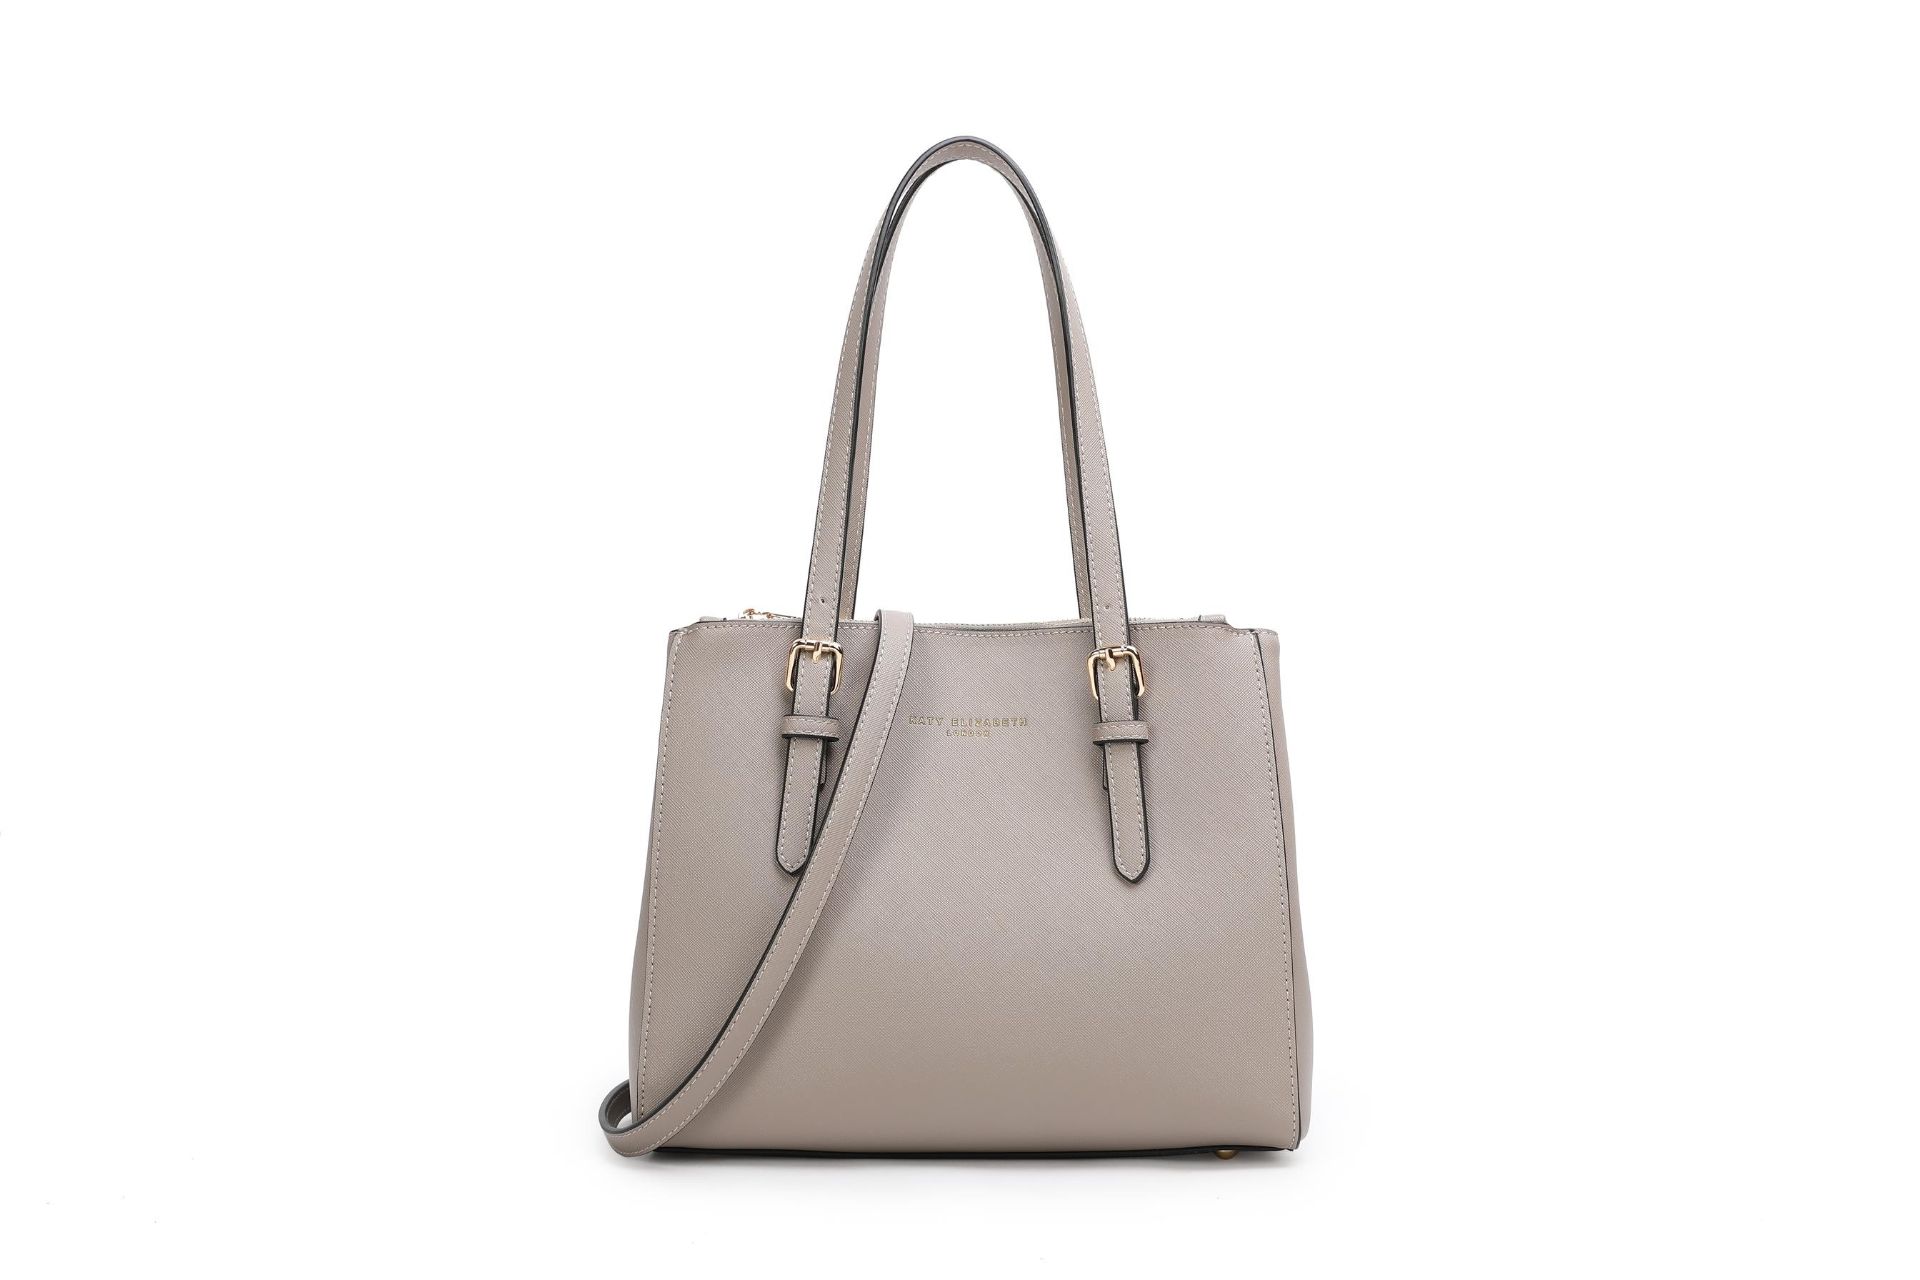 No VAT Brand New Special Edition Katy Elizabeth London Grey Medium Tote Bag With Detachable